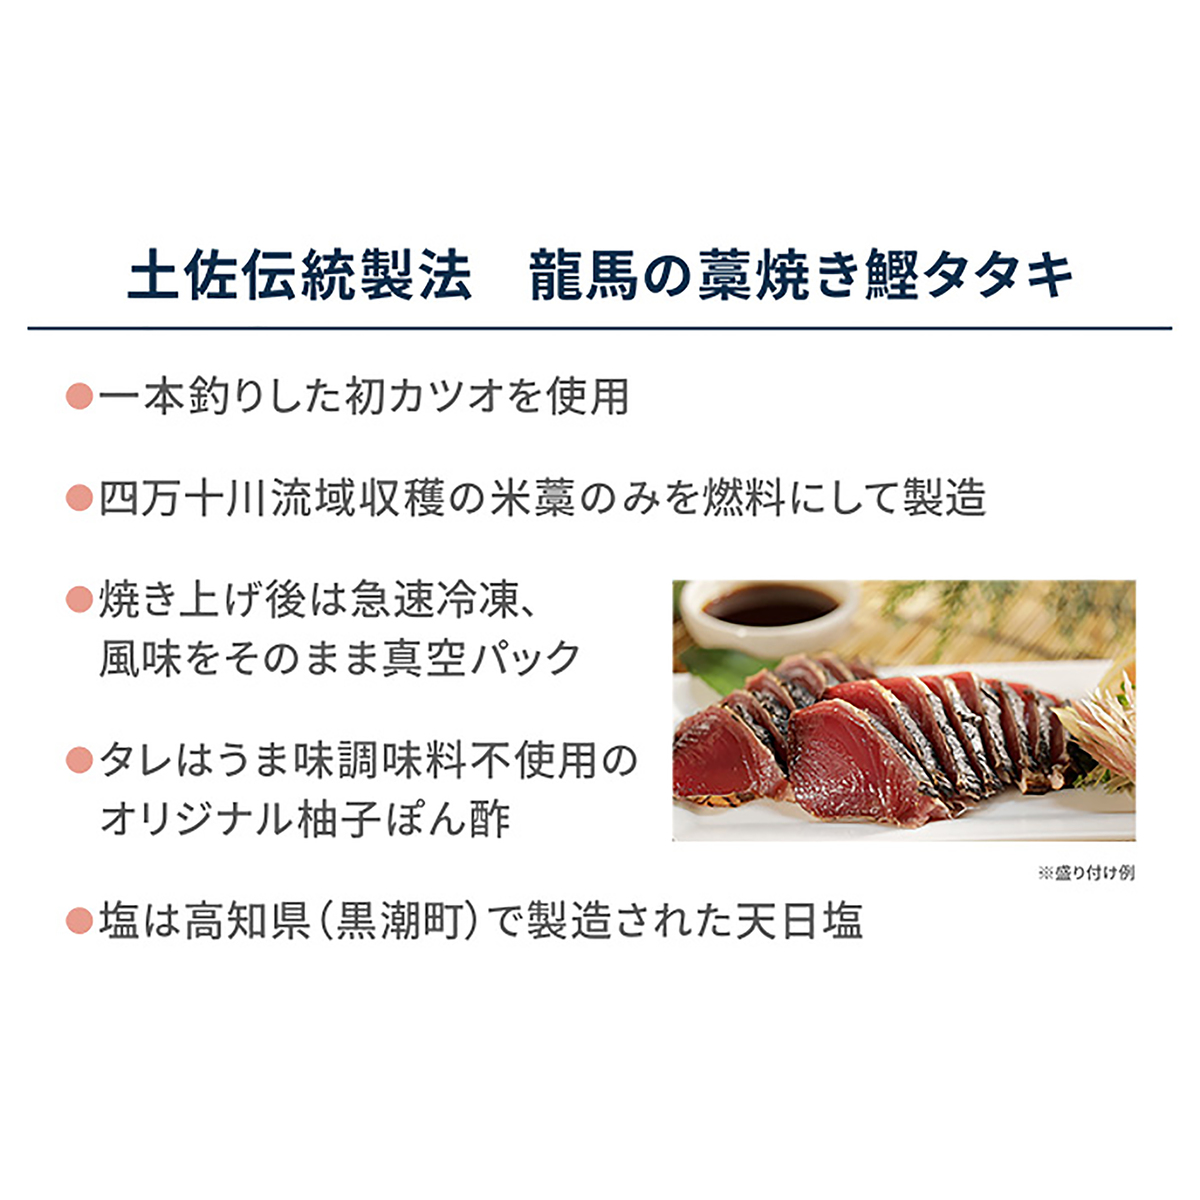 土佐伝統製法 龍馬の藁焼き鰹タタキ2節 JAグループ 全農食品 - QVC.jp